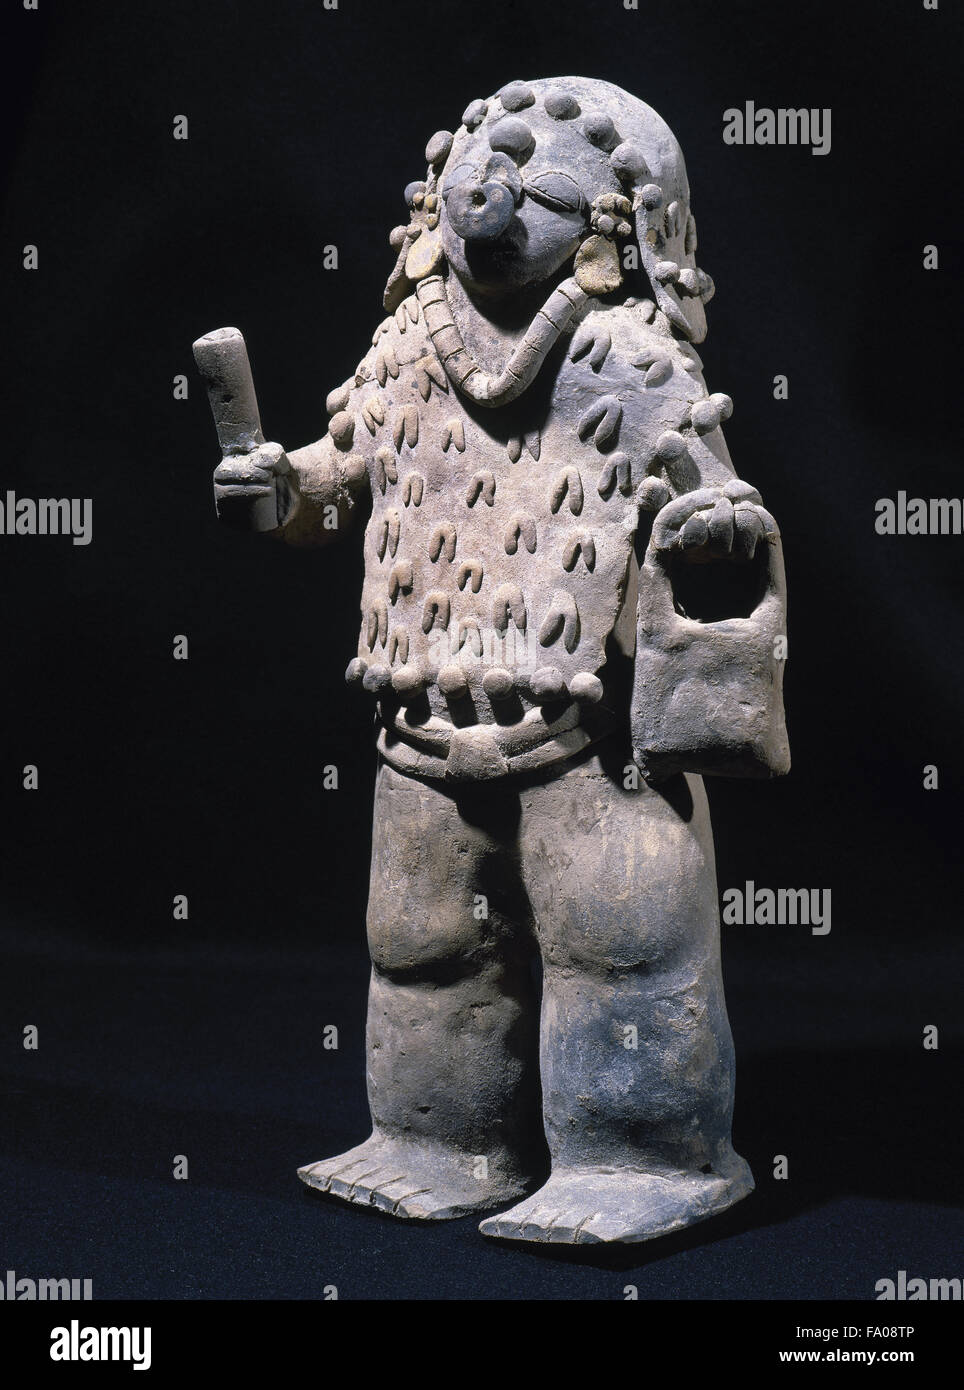 Pre-Columbian art. Pre-Incan. Jama-Coaque Culture. 500 BC-1531 AD. From Ecuador.  Male figurine. 36 x 16 cm (diamer). Stye chone. Private collection. Stock Photo